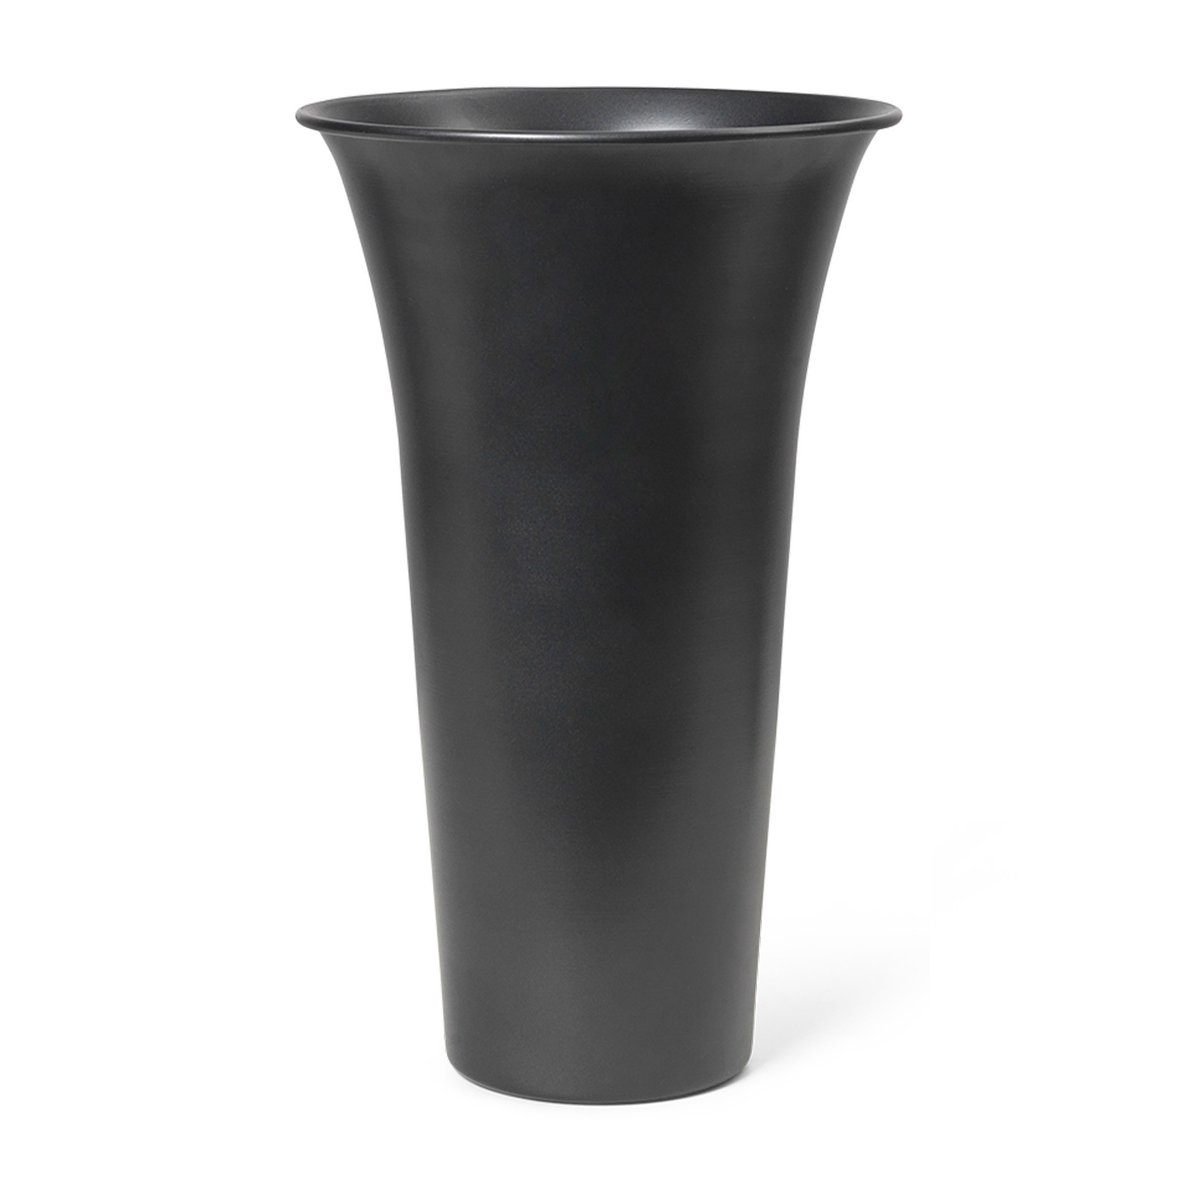 Bilde av ferm LIVING Spun Alu vase Ø 213 cm x 419 cm Blackened aluminium